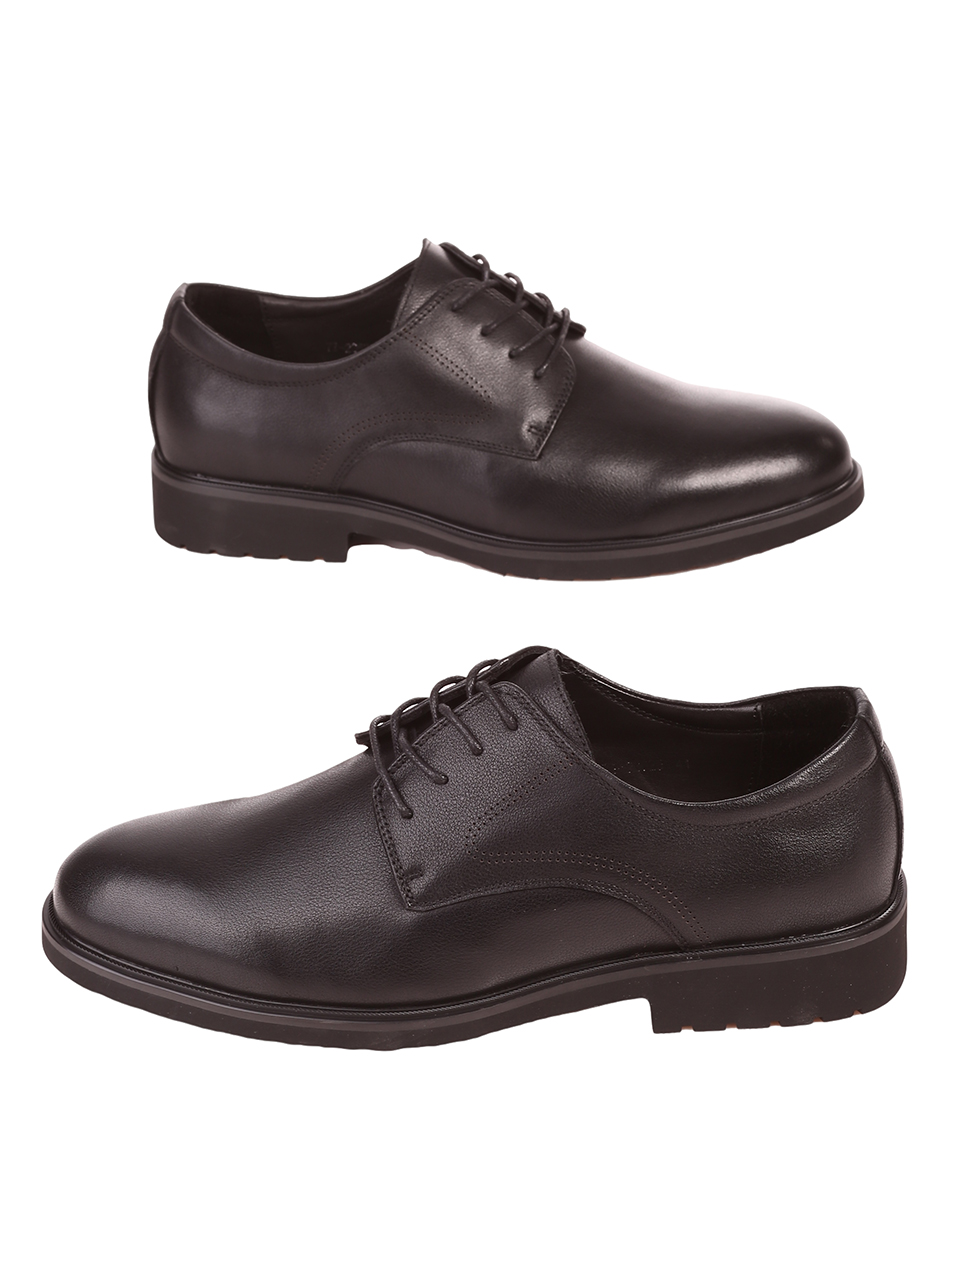 Елегантни мъжки обувки от естествена кожа в черно 7I-23625 black